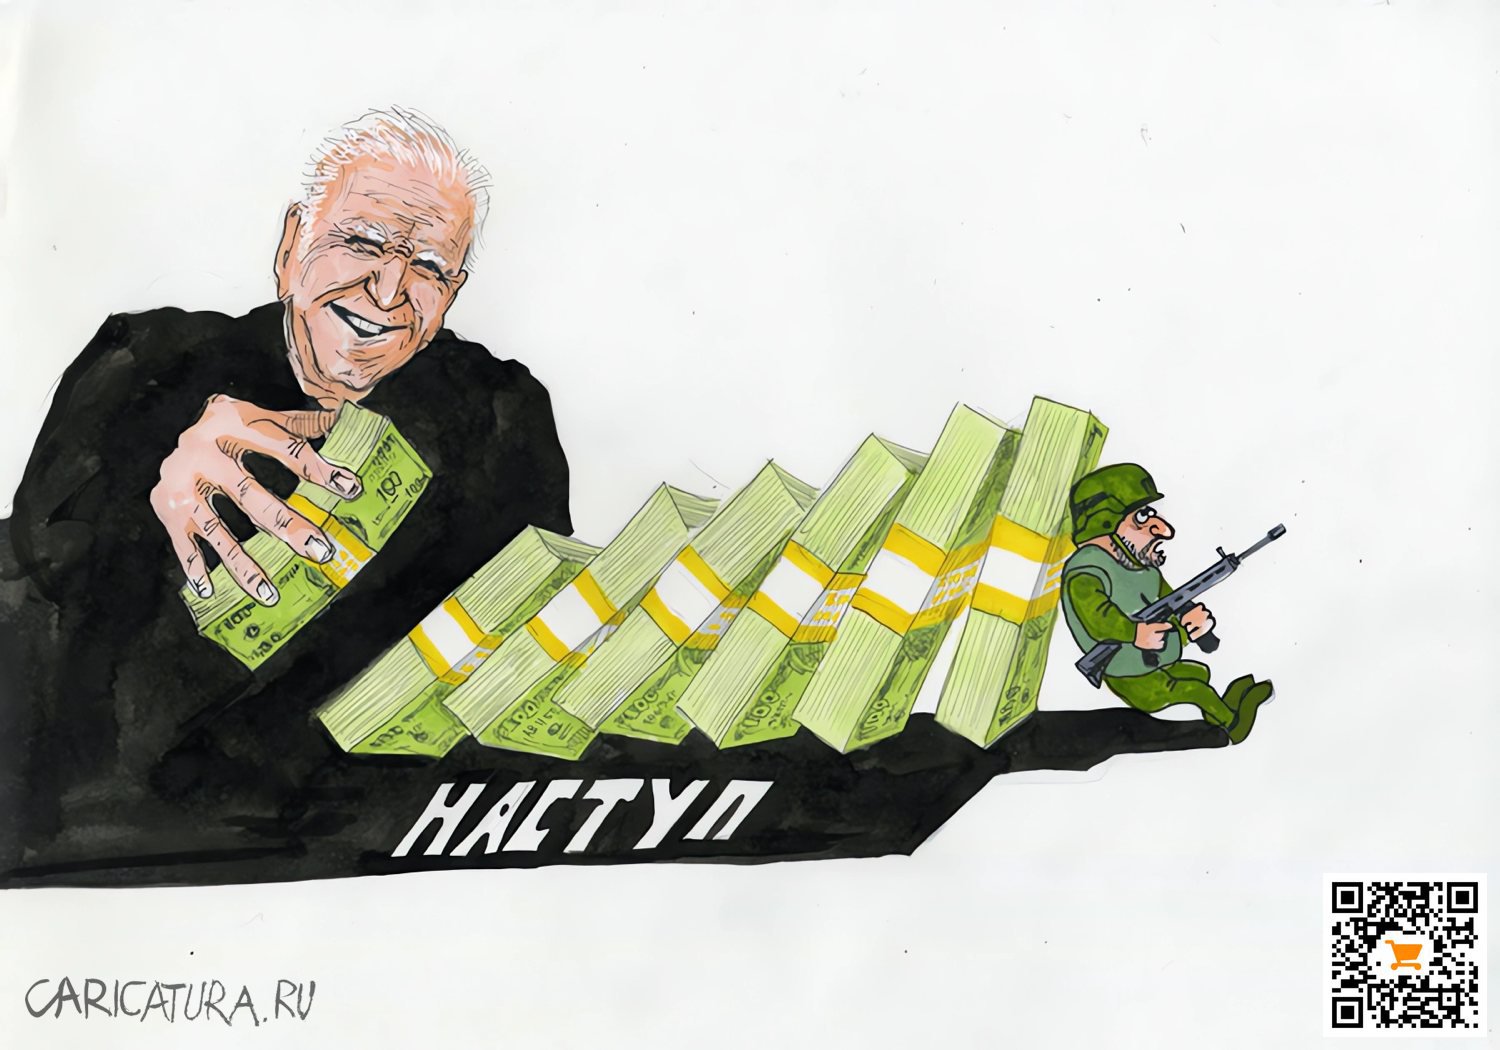 Карикатура "Наступ", Сергей Грищенко